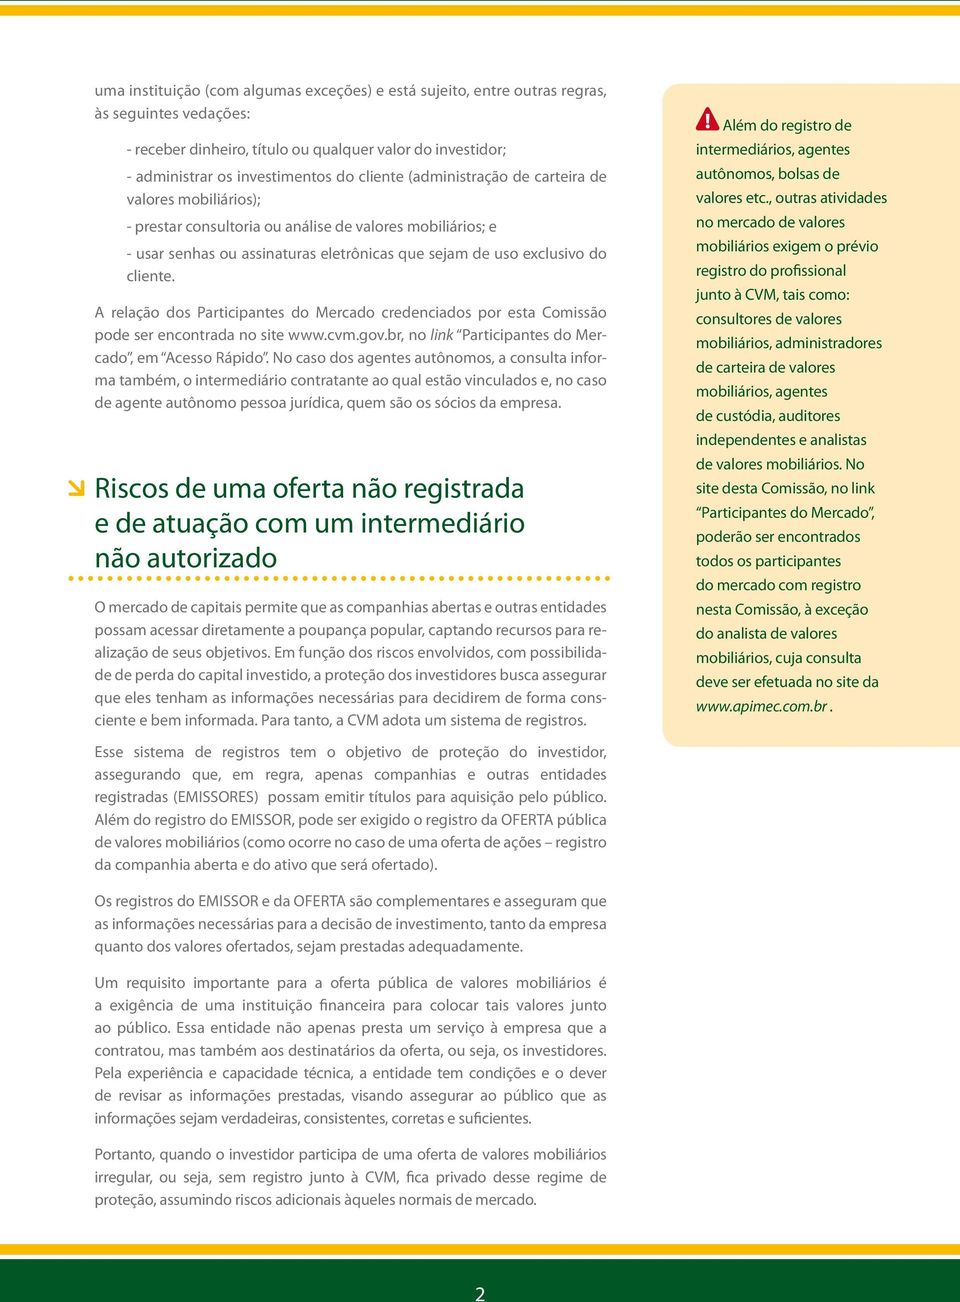 A relação dos Participantes do Mercado credenciados por esta Comissão pode ser encontrada no site www.cvm.gov.br, no link Participantes do Mercado, em Acesso Rápido.